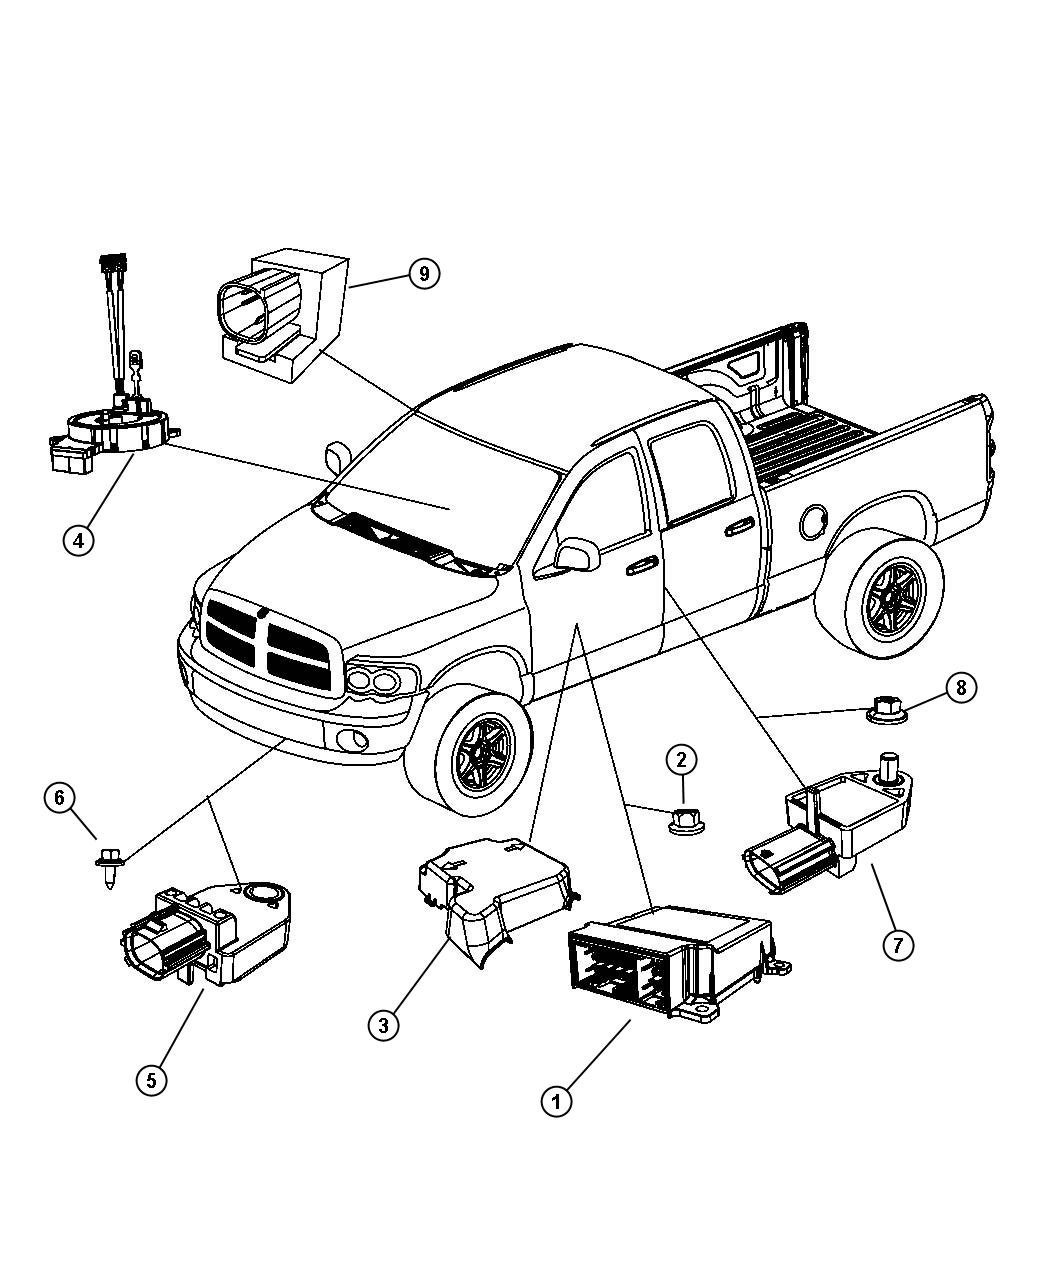 Air Bag Modules, Sensors, and Clockspring. Diagram